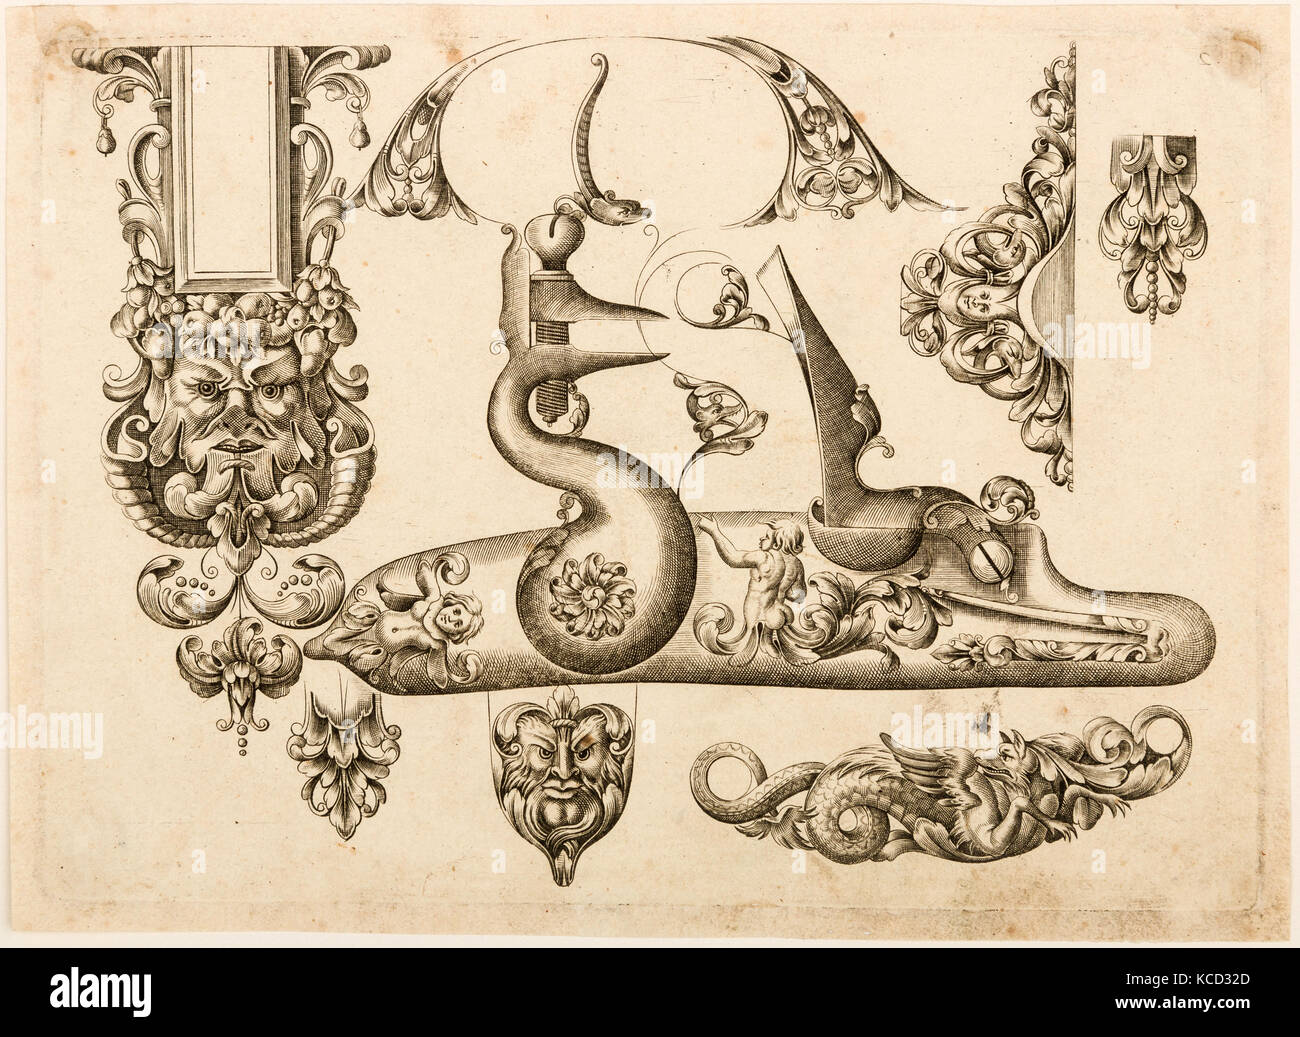 Plate Two from Plusieurs Models des plus nouuelles manieres qui sont en usage en l'Art de Arquebuzerie, ca. 1660 Stock Photo